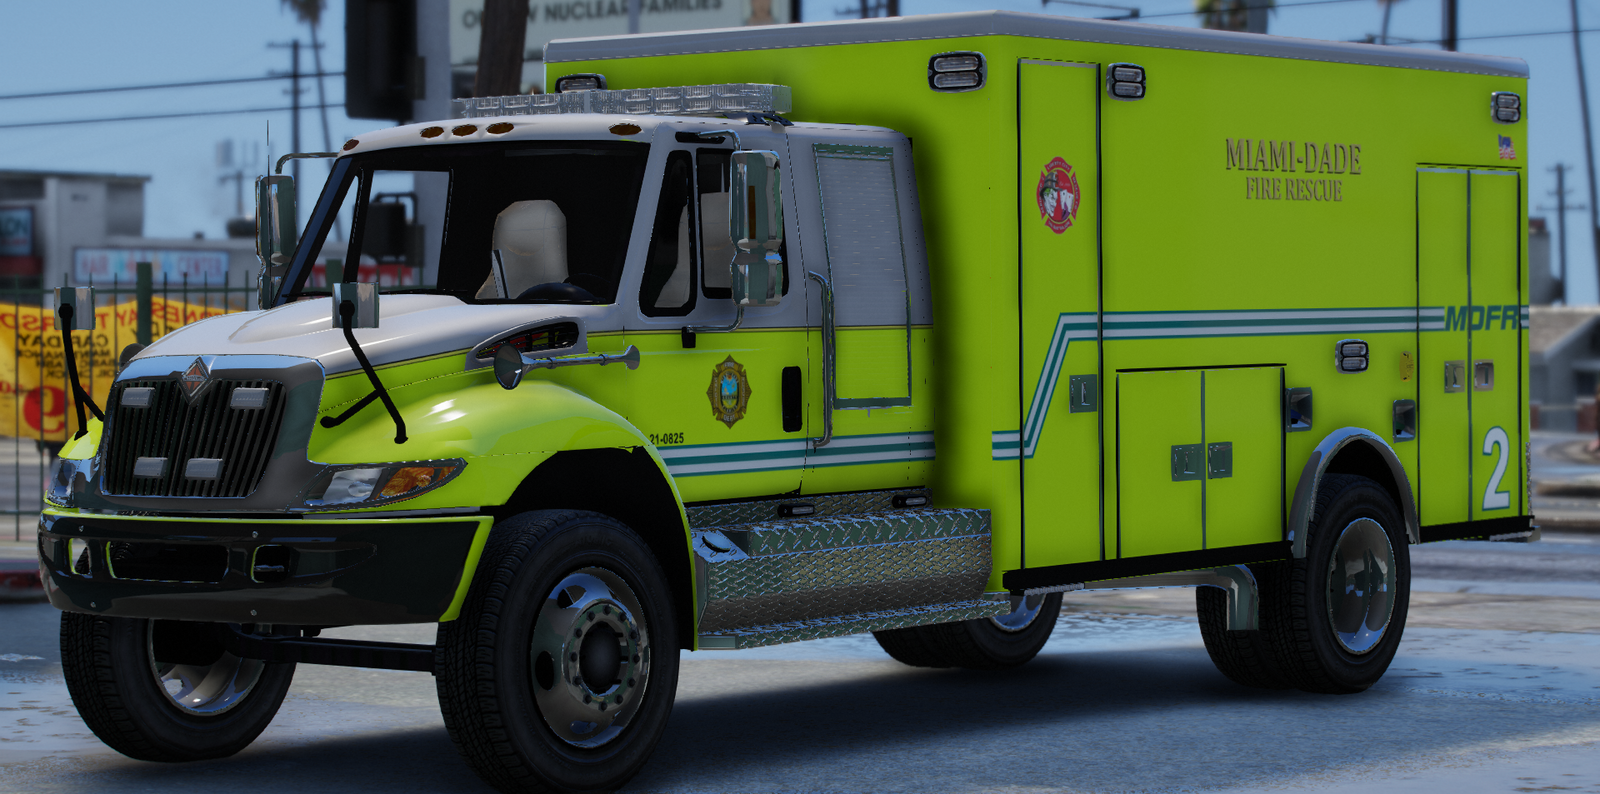 Miami-Dade Fire Rescue - Rescue 2 - GTA V Galleries - LCPDFR.com